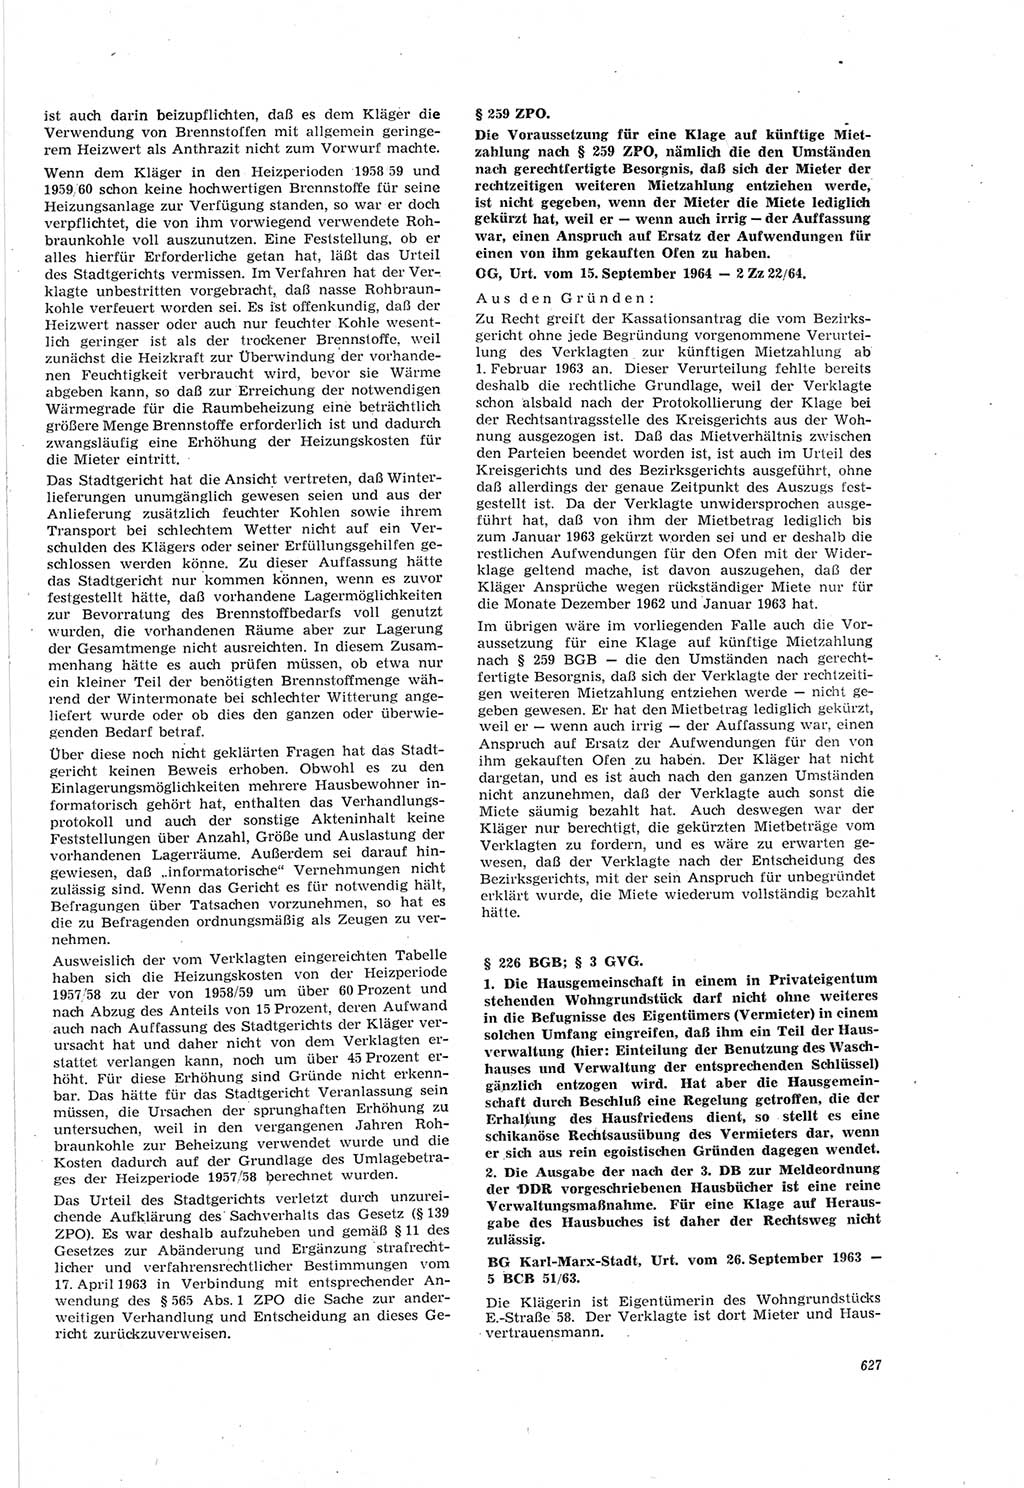 Neue Justiz (NJ), Zeitschrift für Recht und Rechtswissenschaft [Deutsche Demokratische Republik (DDR)], 18. Jahrgang 1964, Seite 627 (NJ DDR 1964, S. 627)